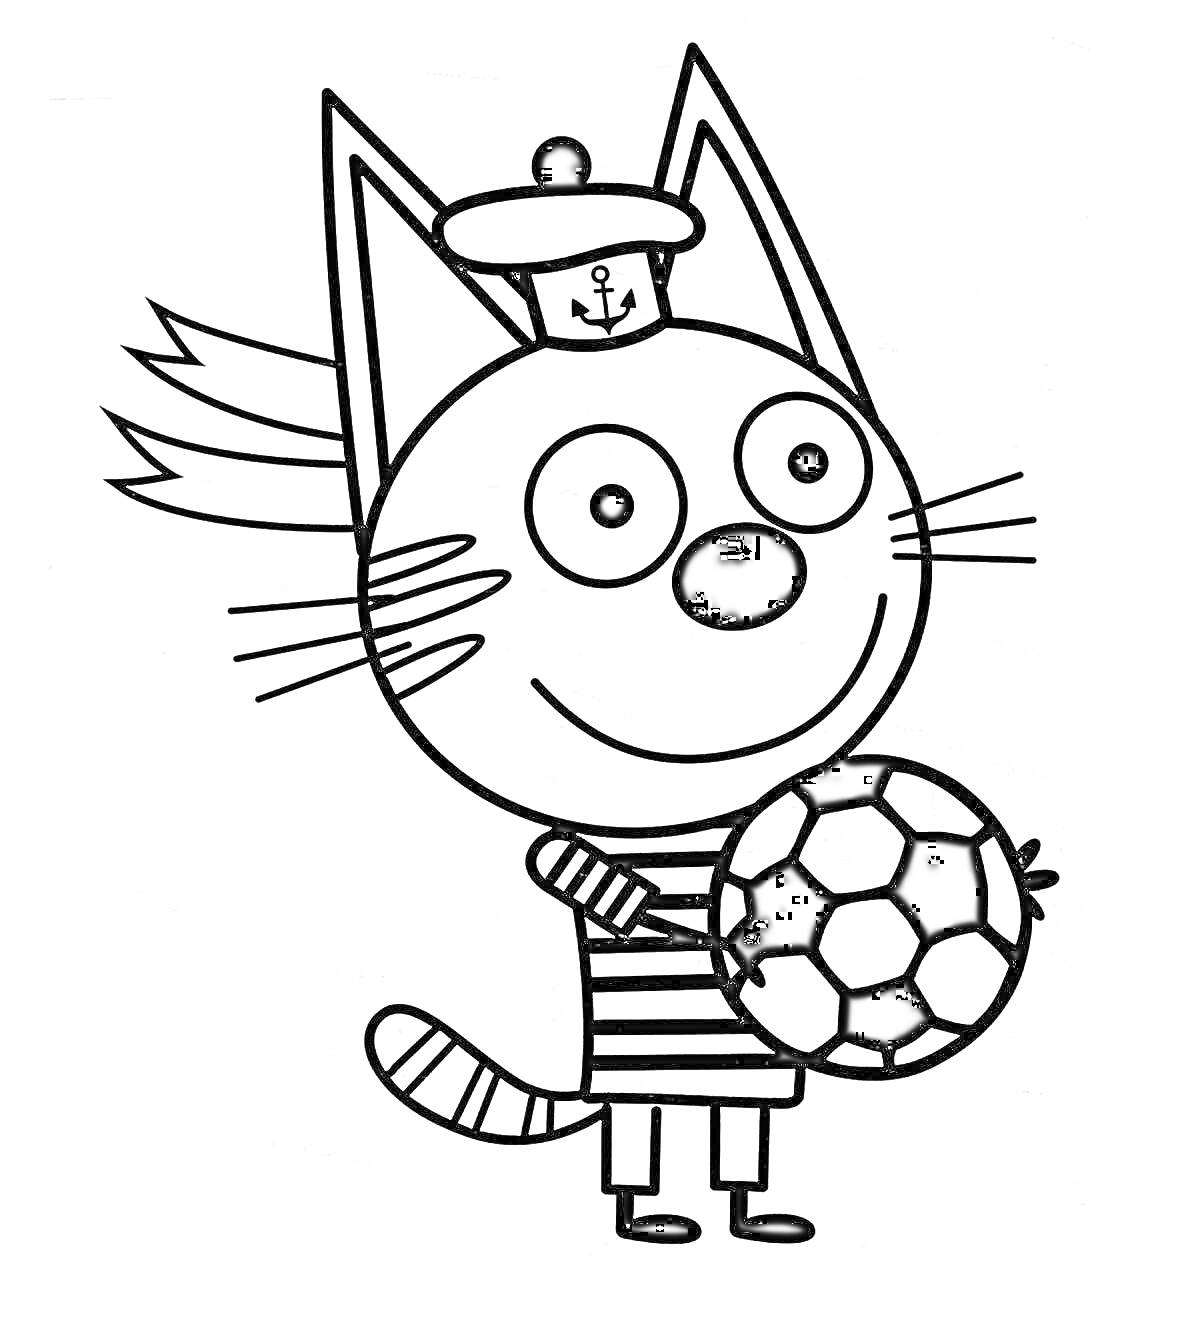 Кот в тельняшке и морской фуражке, держащий футбольный мяч